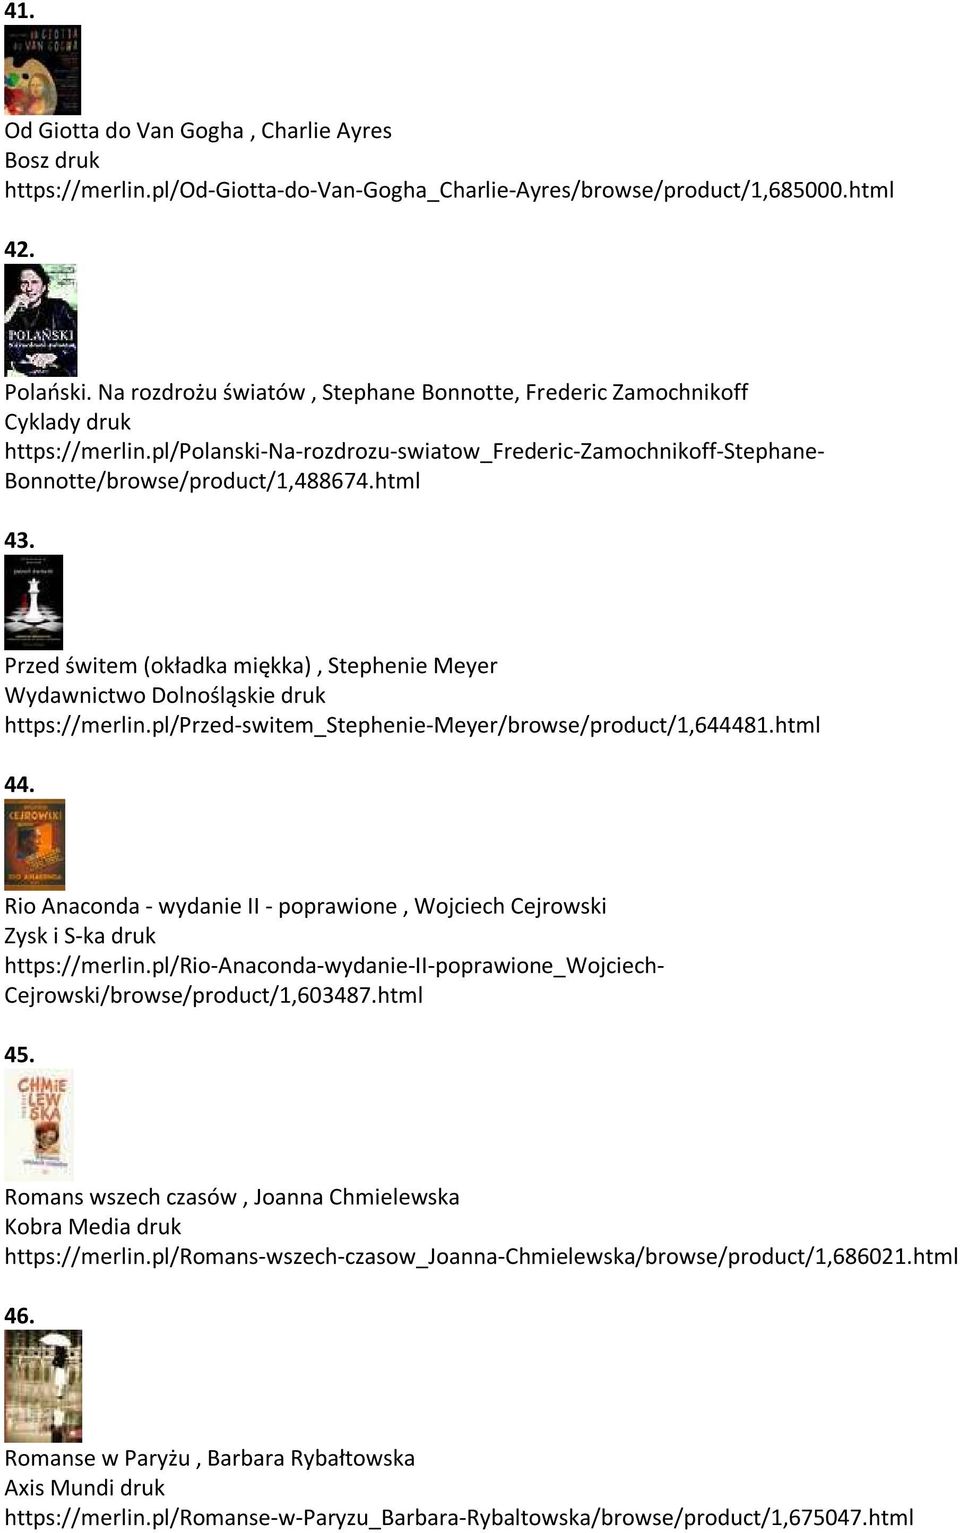 Przed świtem (okładka miękka), Stephenie Meyer Wydawnictwo Dolnośląskie druk https://merlin.pl/przed-switem_stephenie-meyer/browse/product/1,644481.html 44.